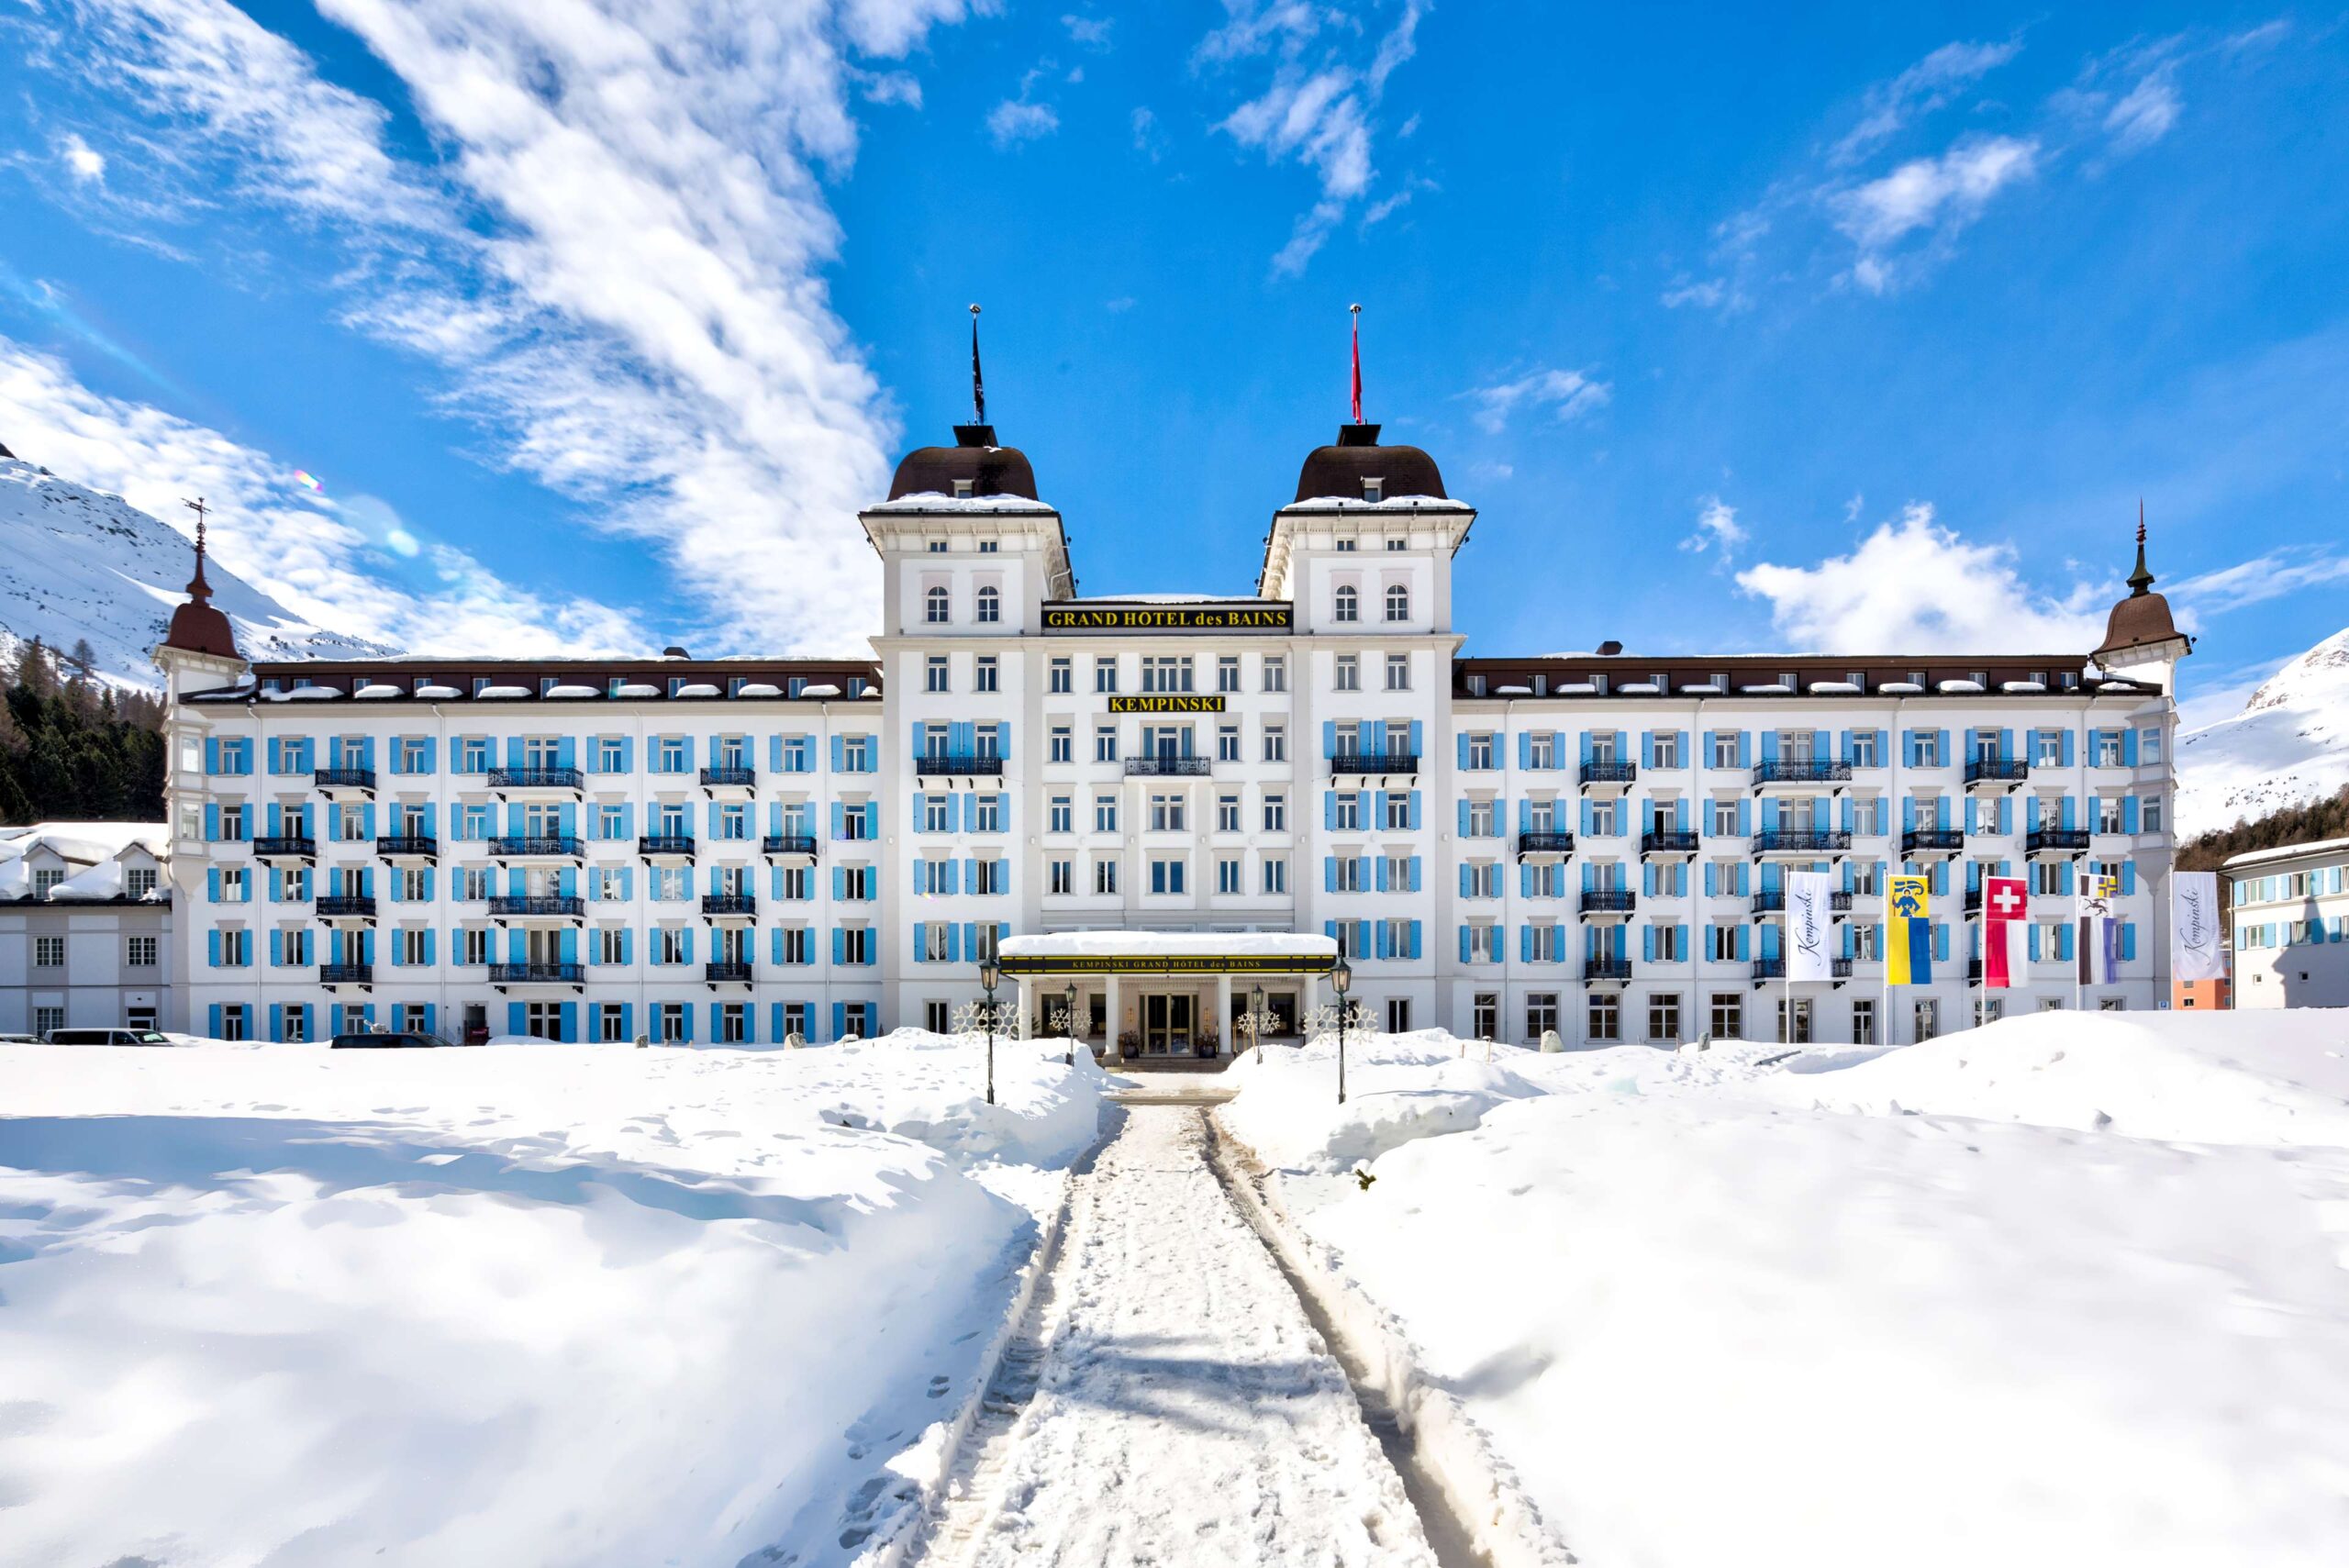 Grand Hotel des Bains Kempiski St Moritz - Location Luxury St Moritz - The Unique Show